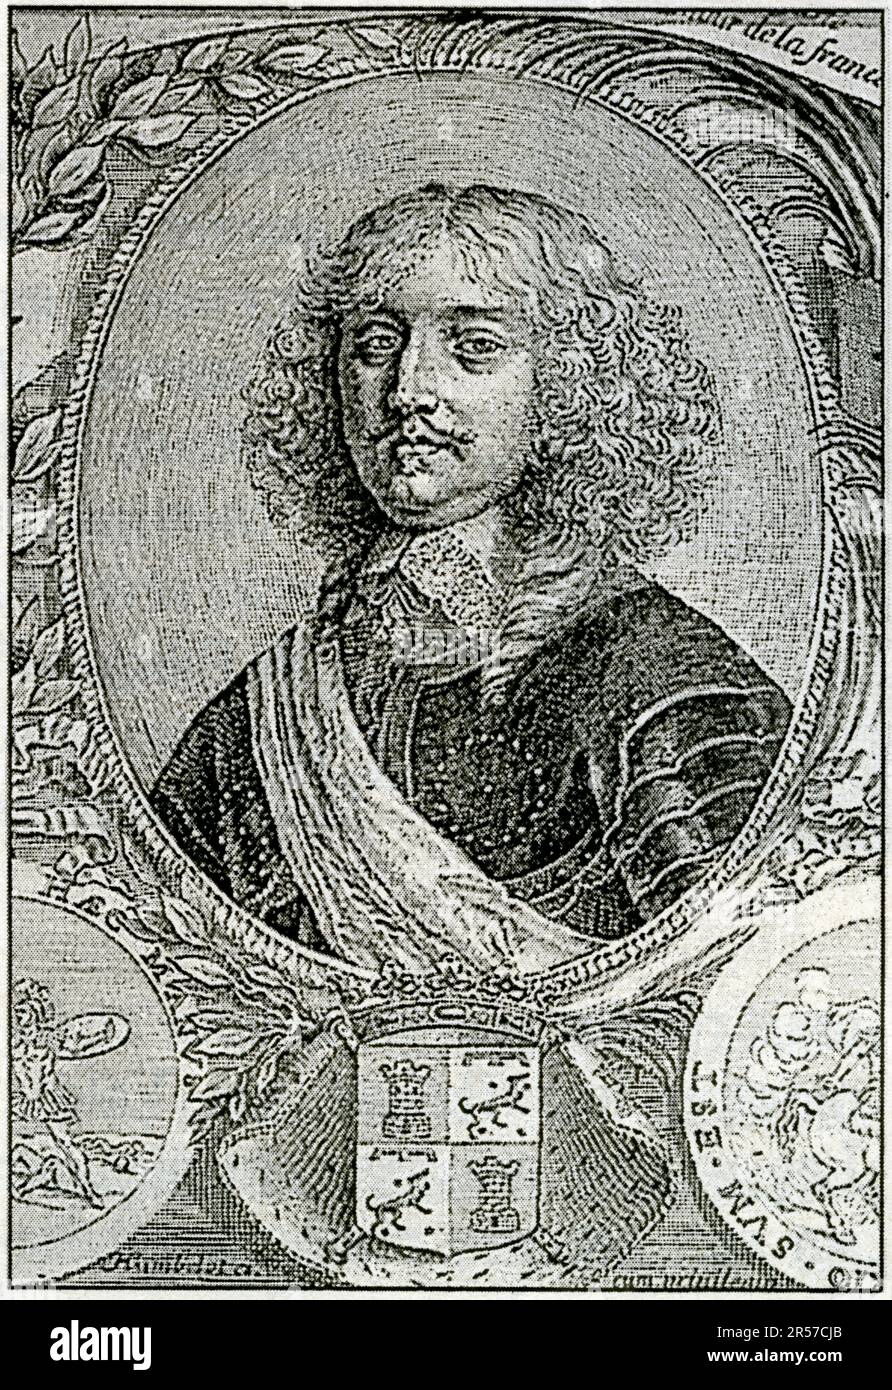 Le maréchal de La Mothe-Houdancourt, 1605-1657, commanda l'armée d'Italie, maréchal de France en 1642. Gravure d'Humblot. Stockfoto